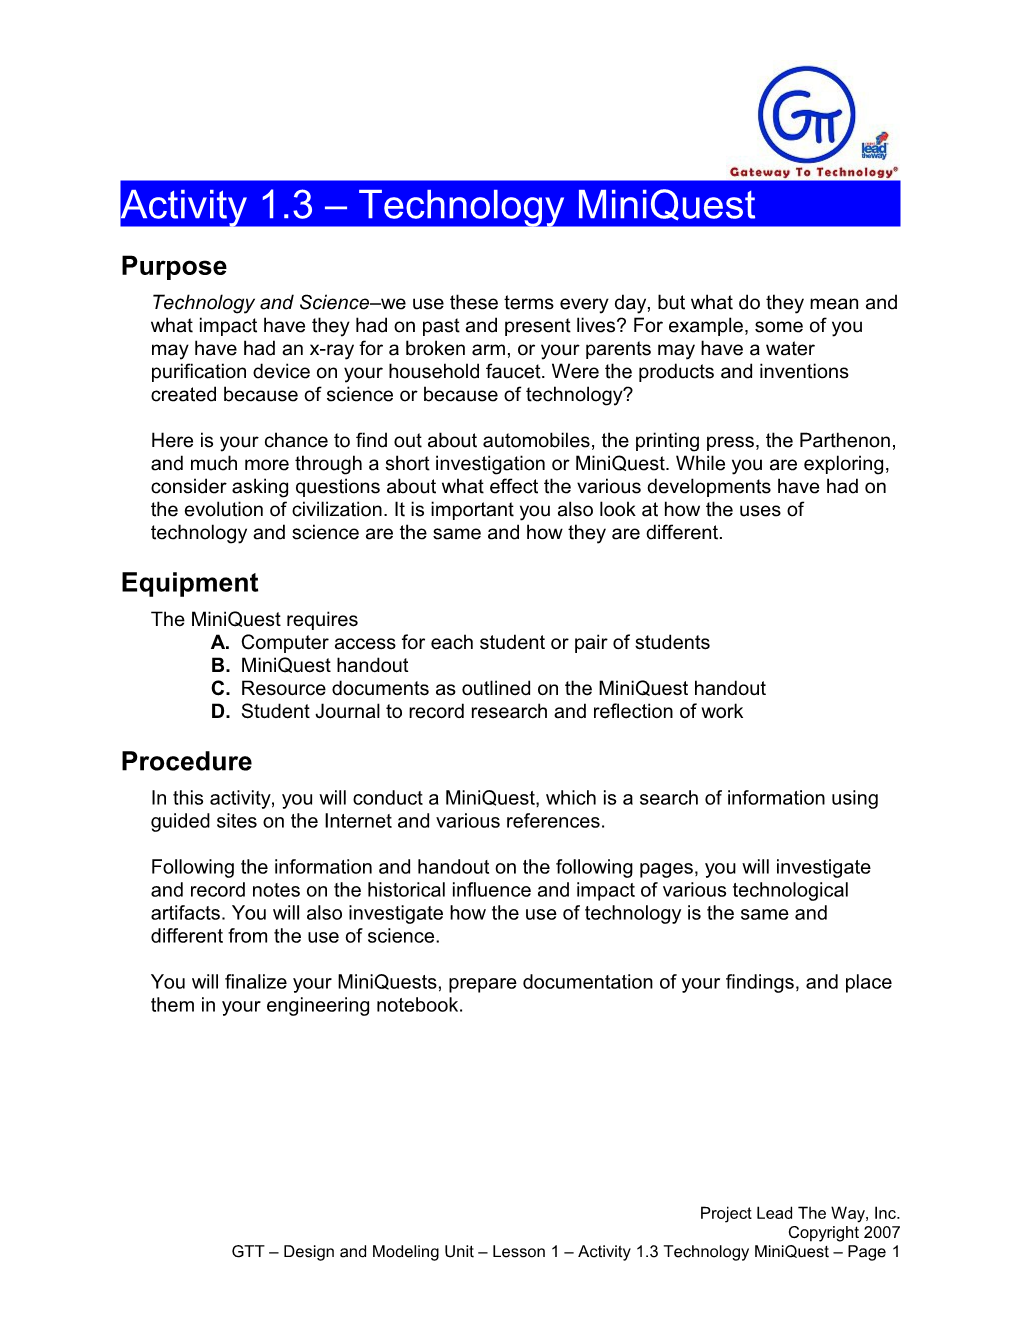 Activity 1.3 - Technology Miniquest